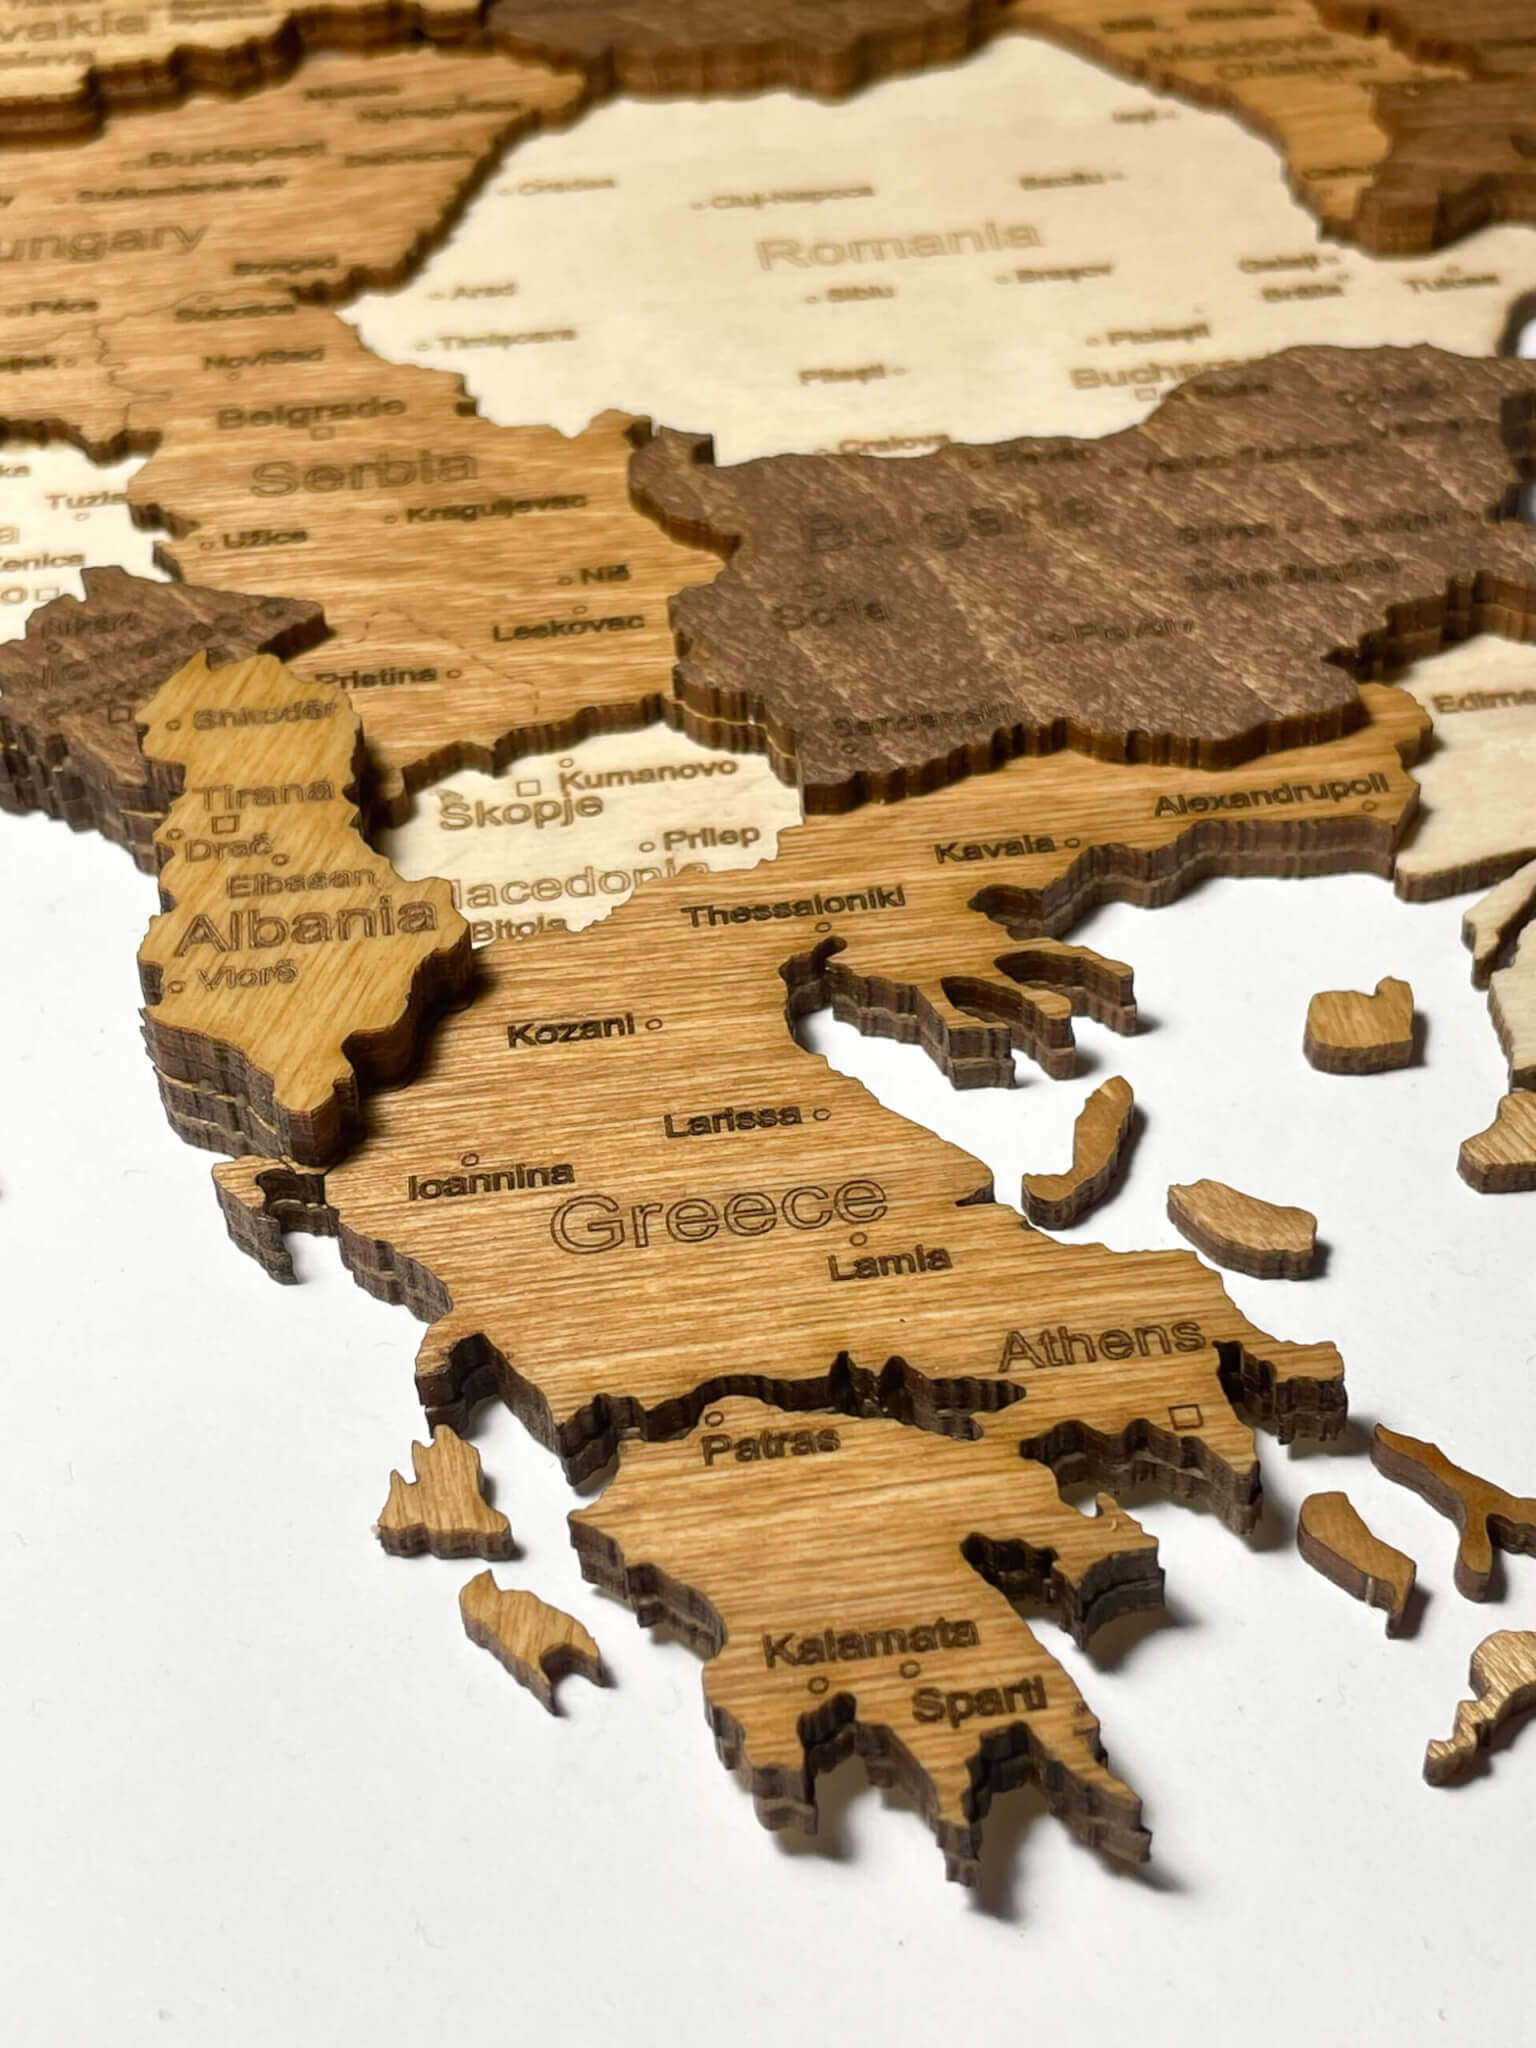 Grecia - Mappa 3D dell'Europa in legno